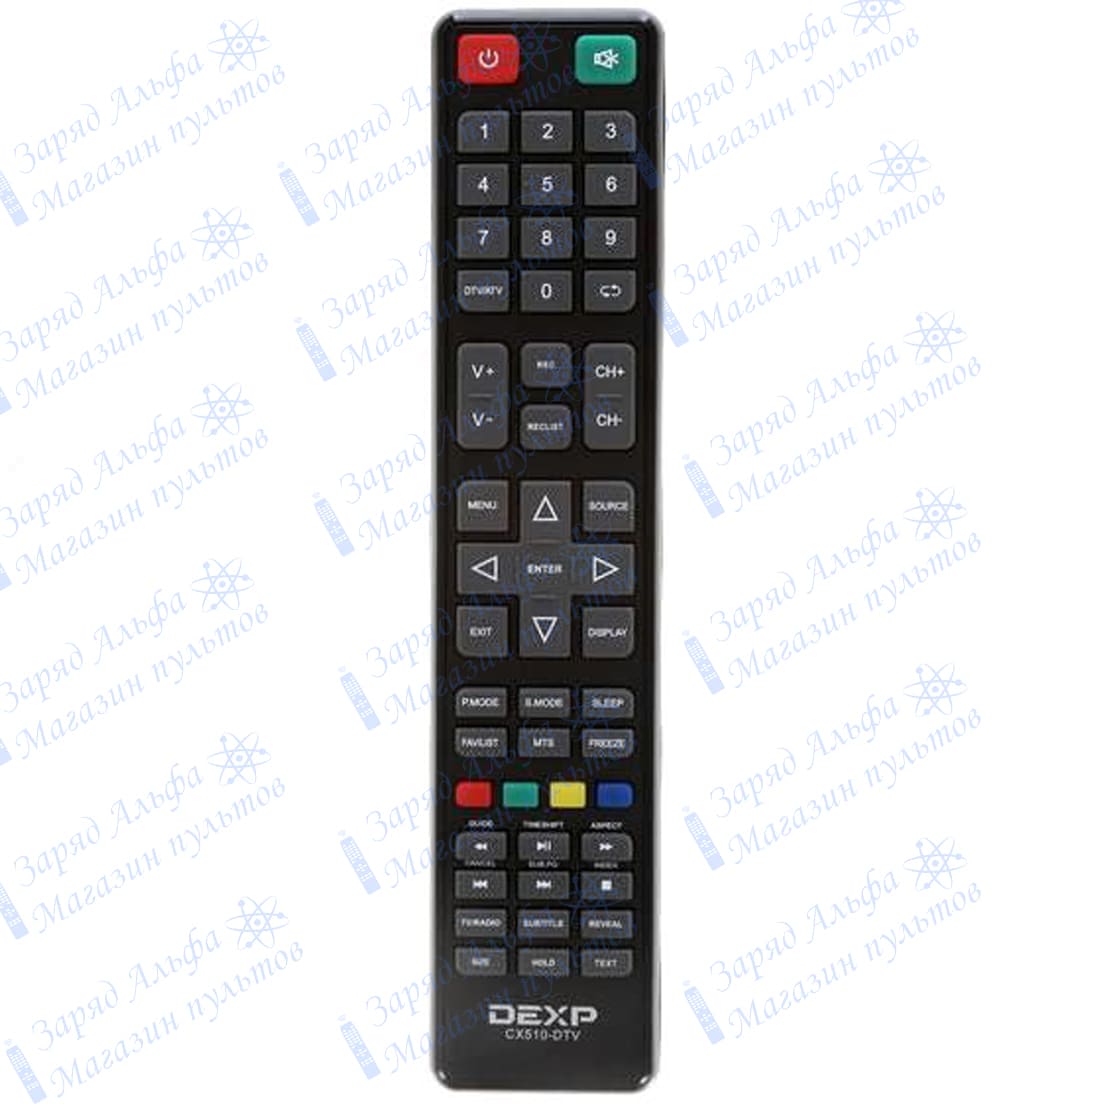 Приобрести Dexp CX510-DTV пульт к телевизору U55D7200E